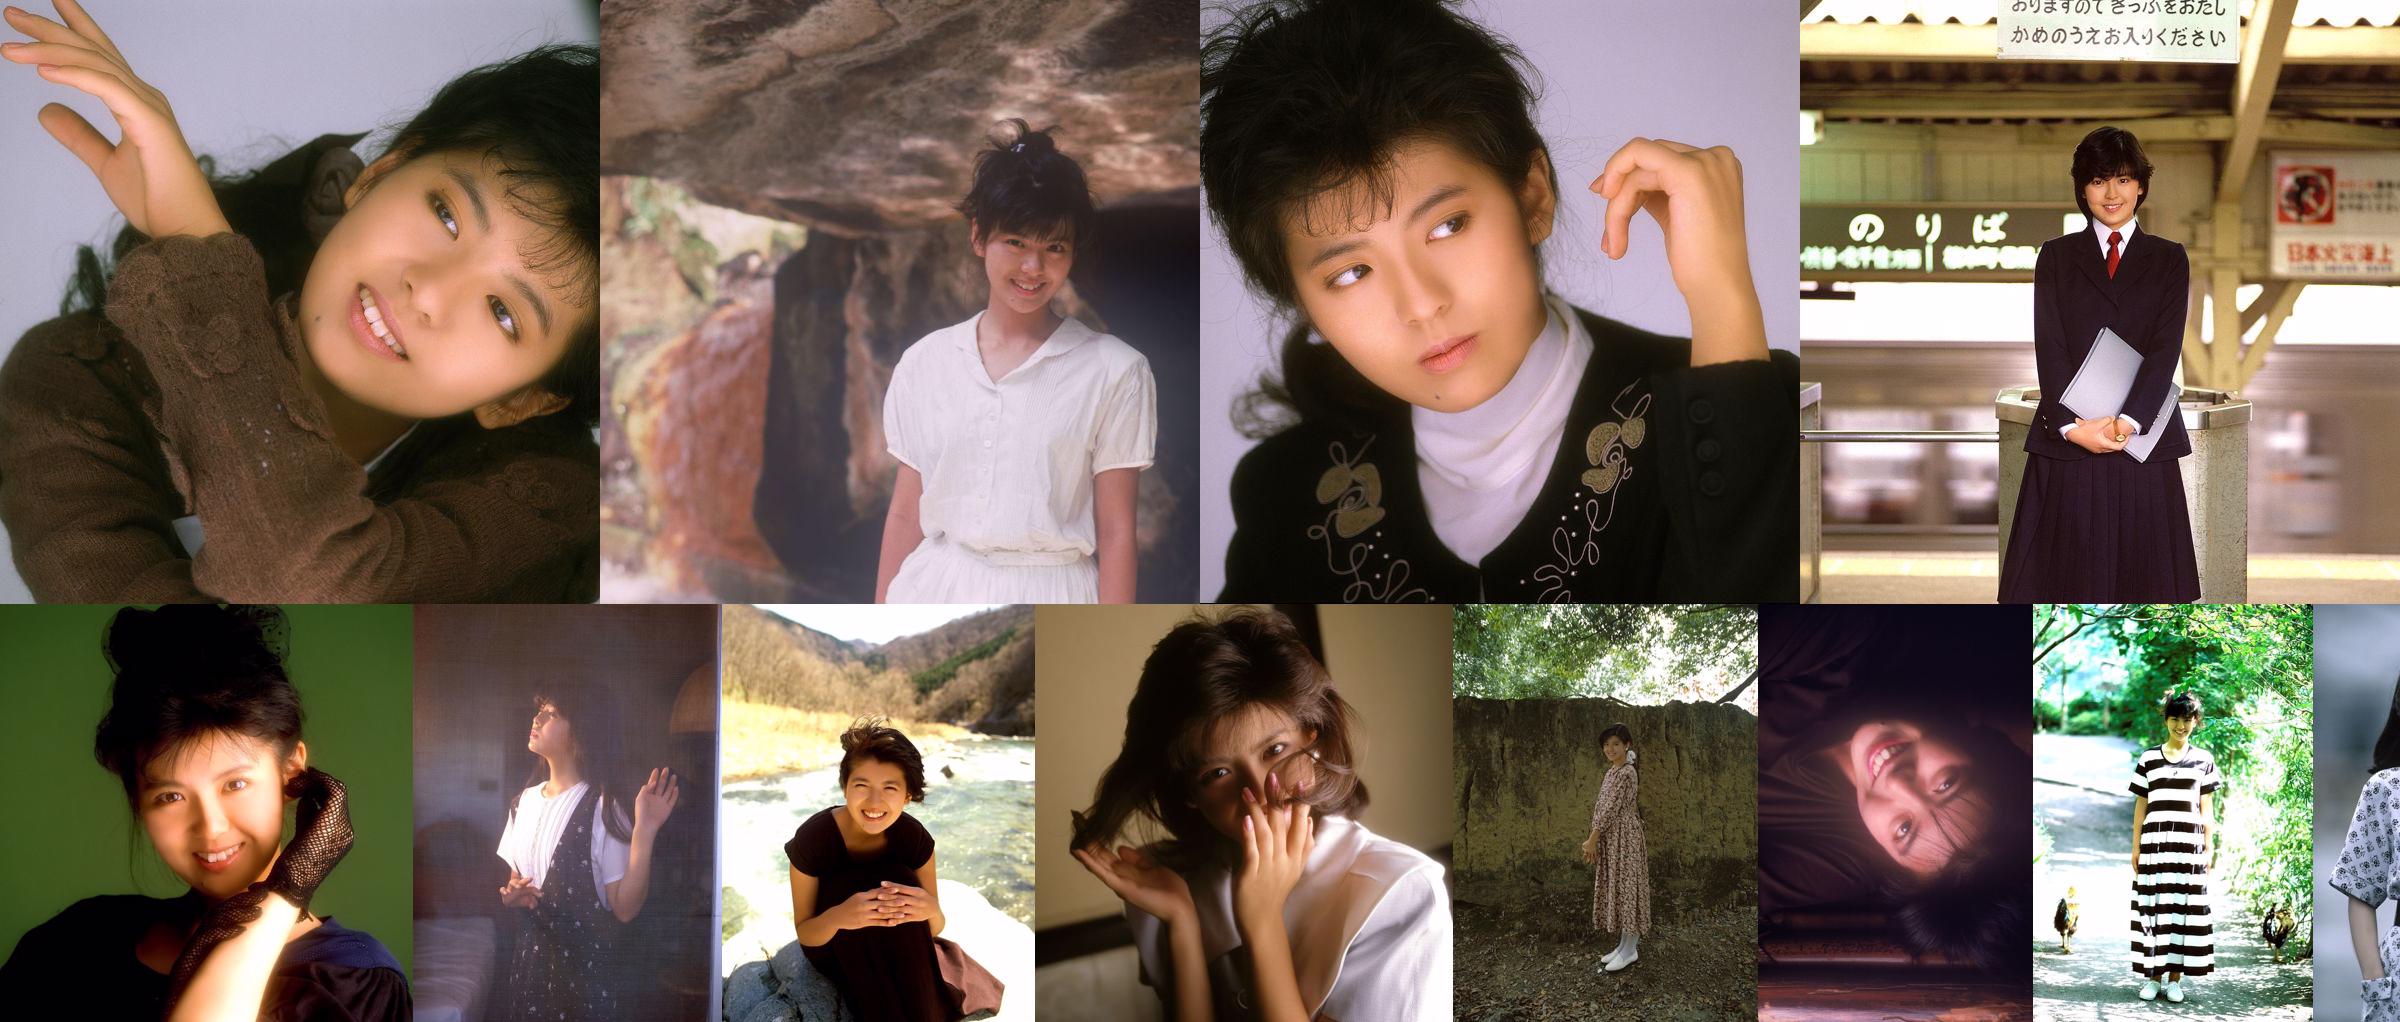 [NS Eyes] SF-No.212 Yoko Minamino Yoko Minamino No.e64a5f Halaman 6